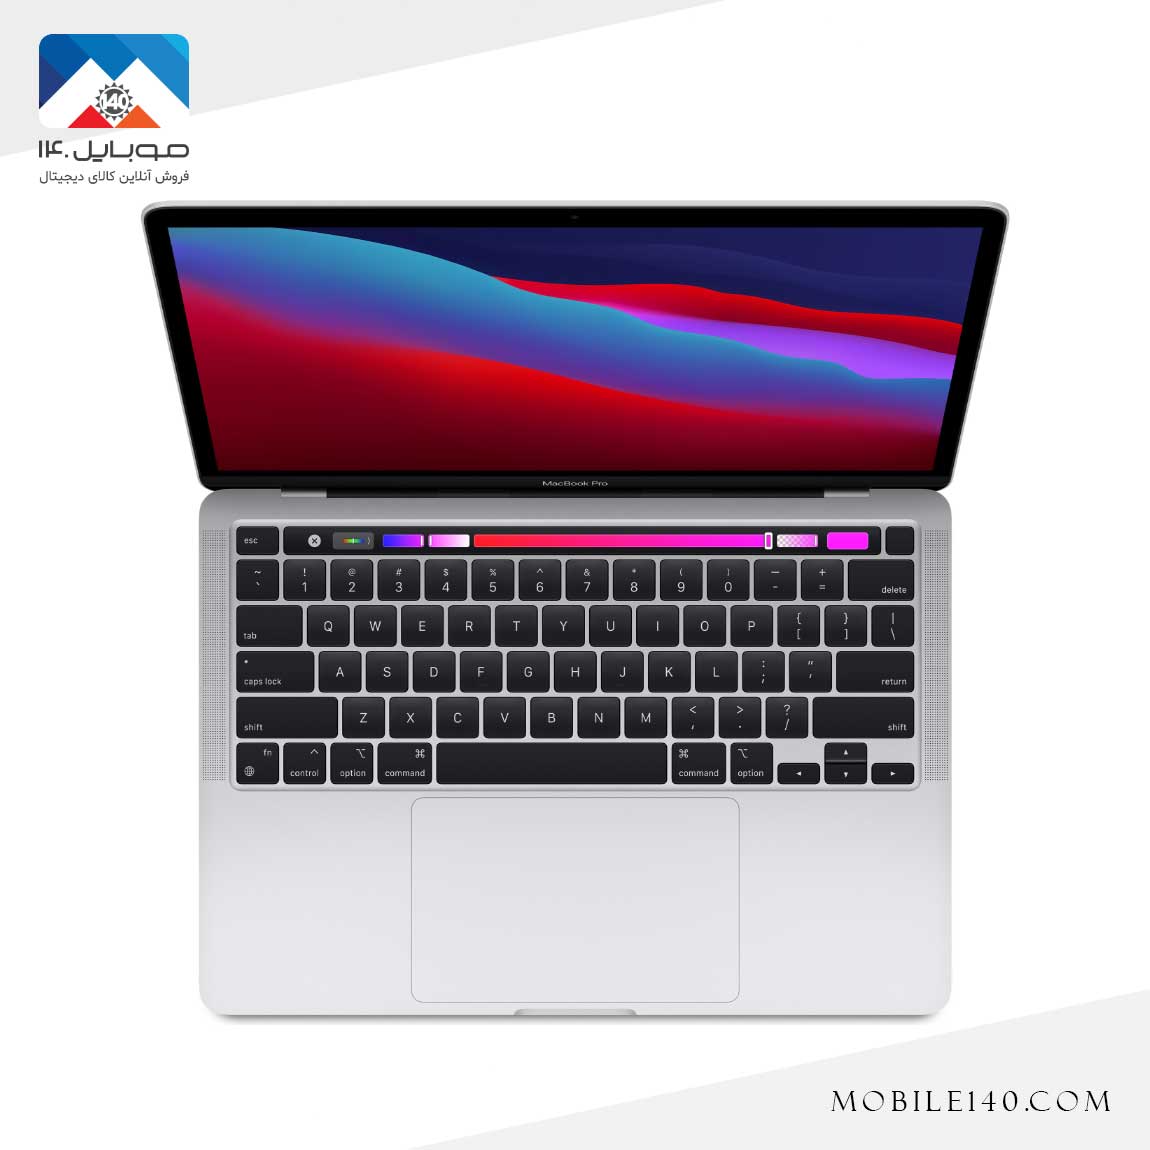  Apple Macbook Pro 2020 MYDA2 2